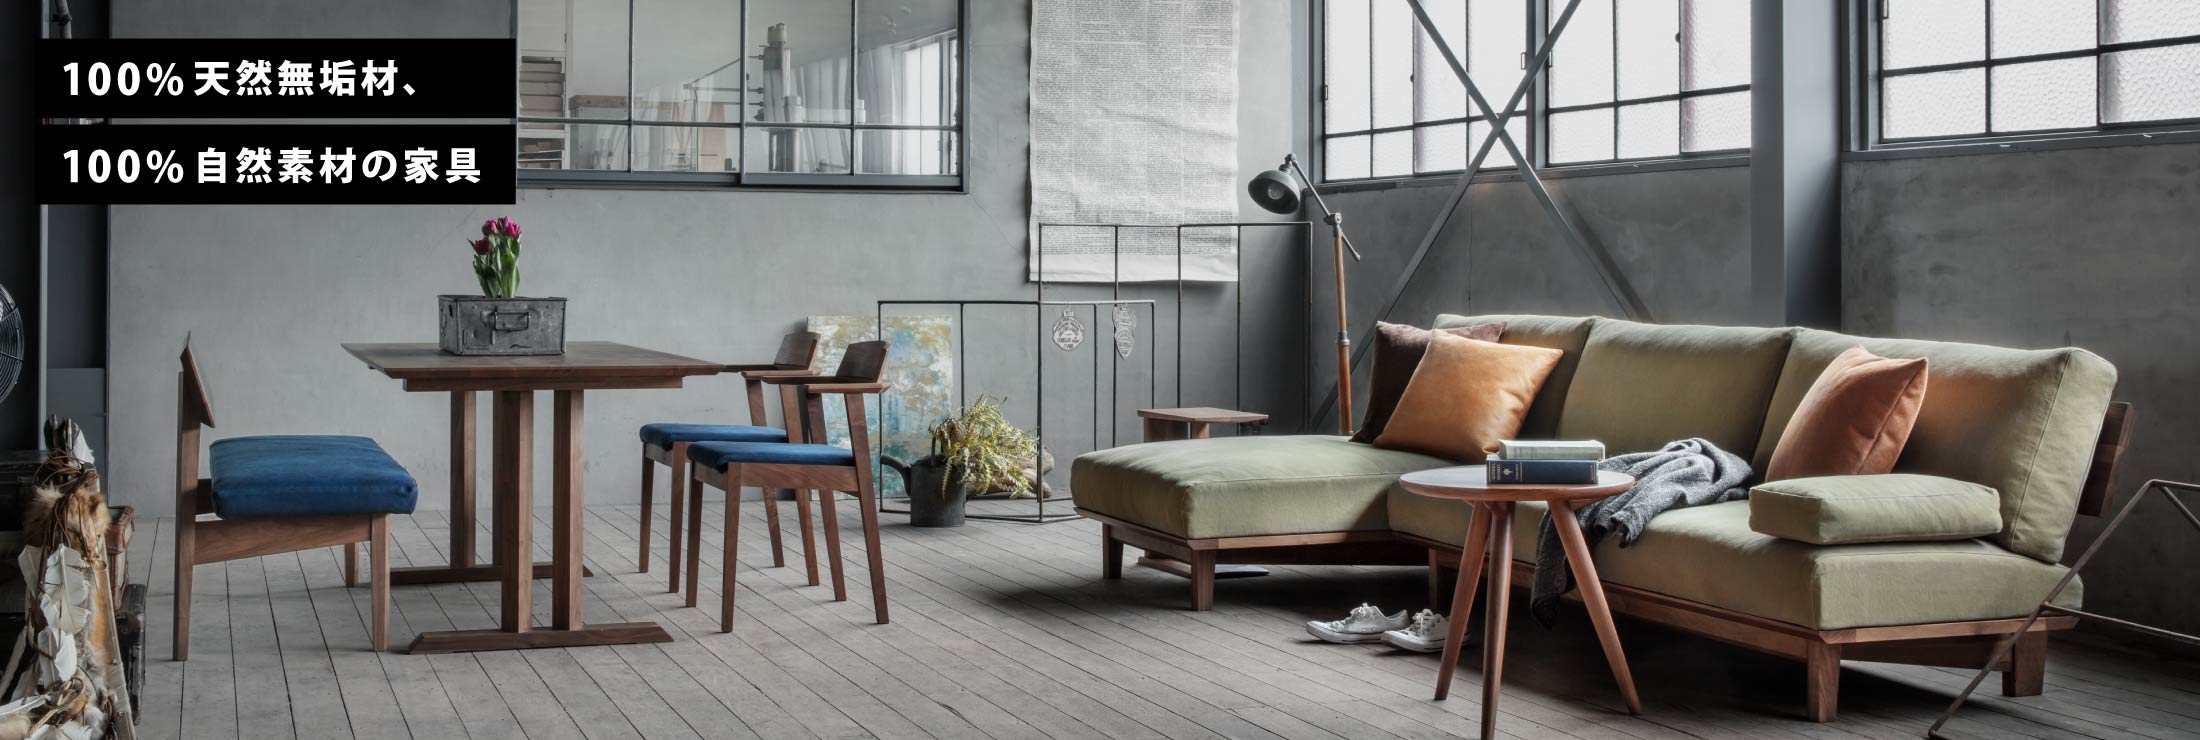 エッジの効いたデザインの家具で空間を統一しております。カウチソファとセットで置くことで、大人数で座ることや横になることも可能です。